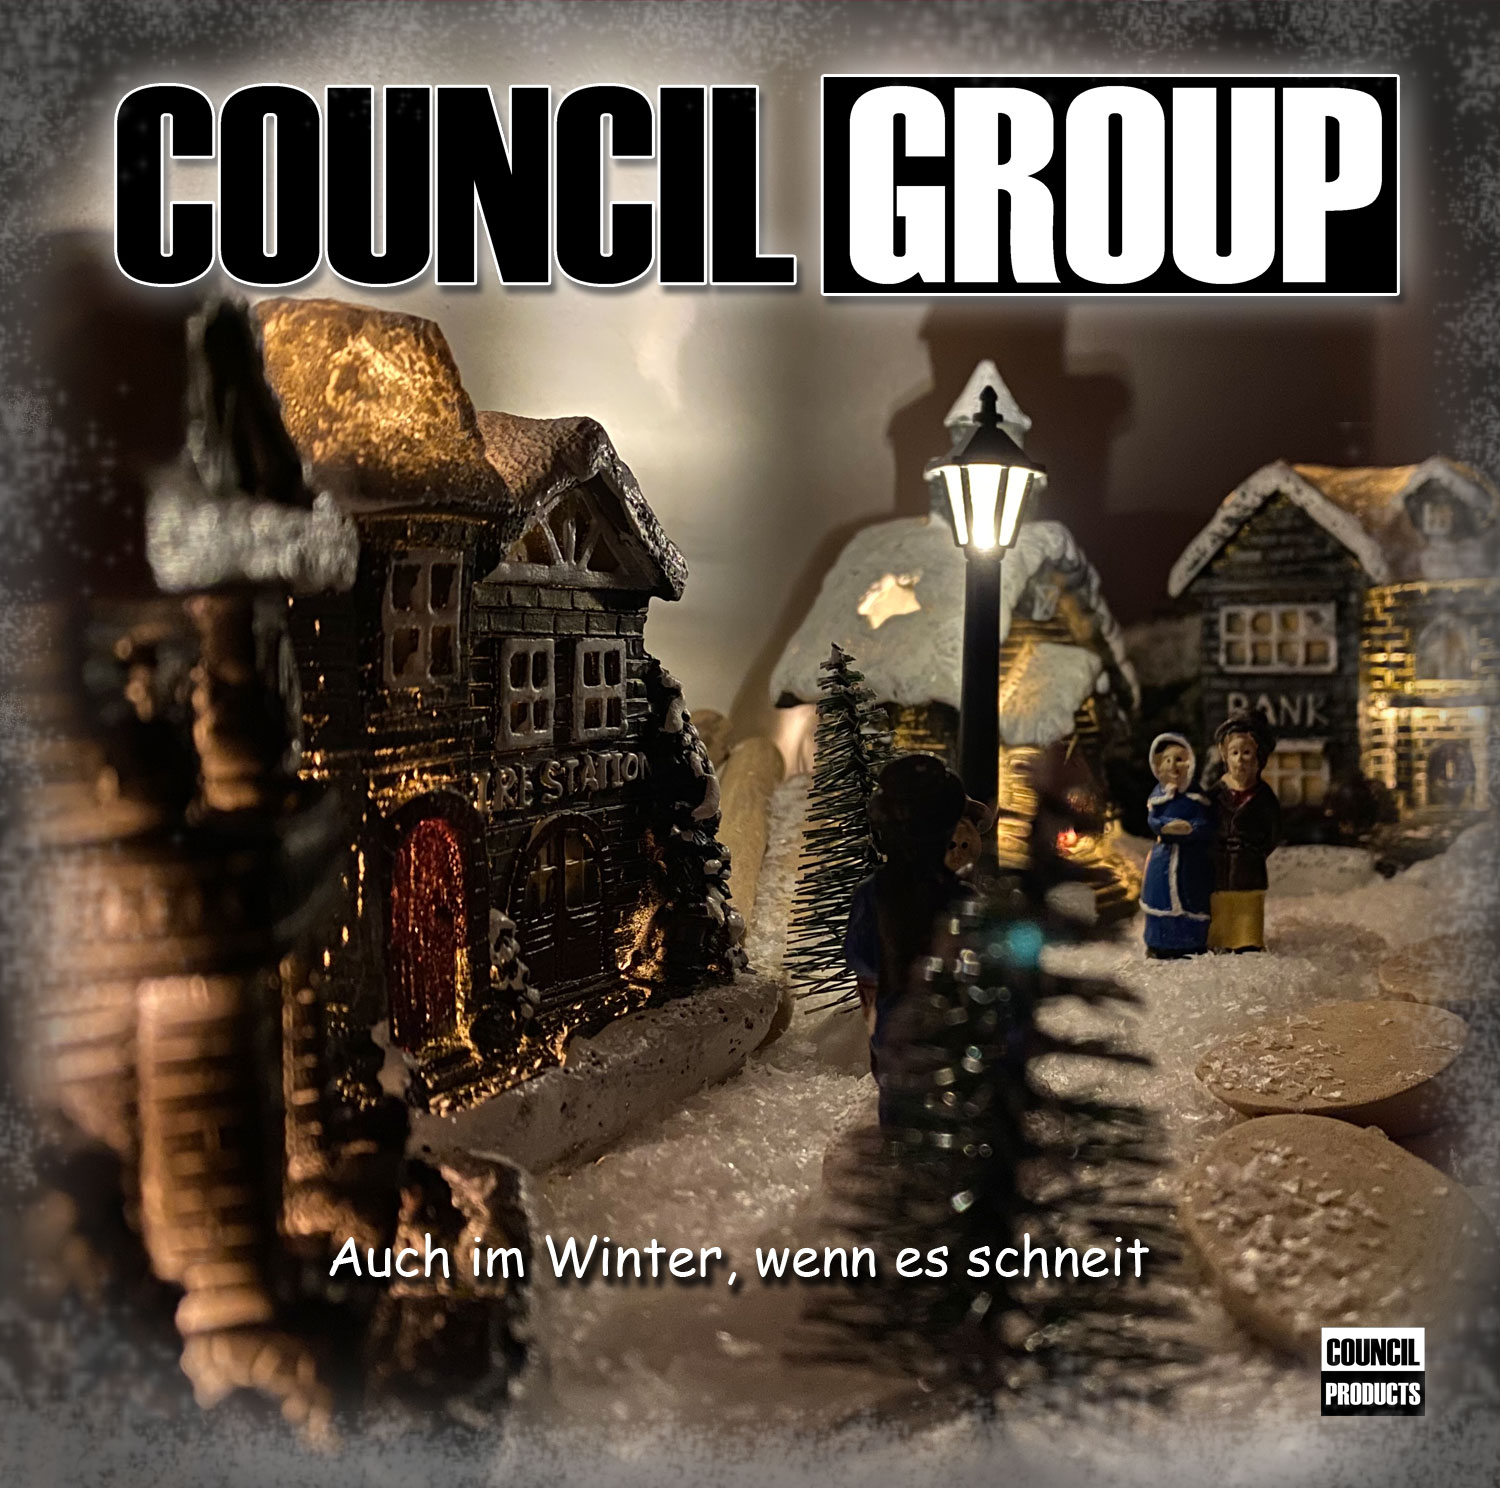 CouncilGroup - Auch im Winter, wenn es schneit